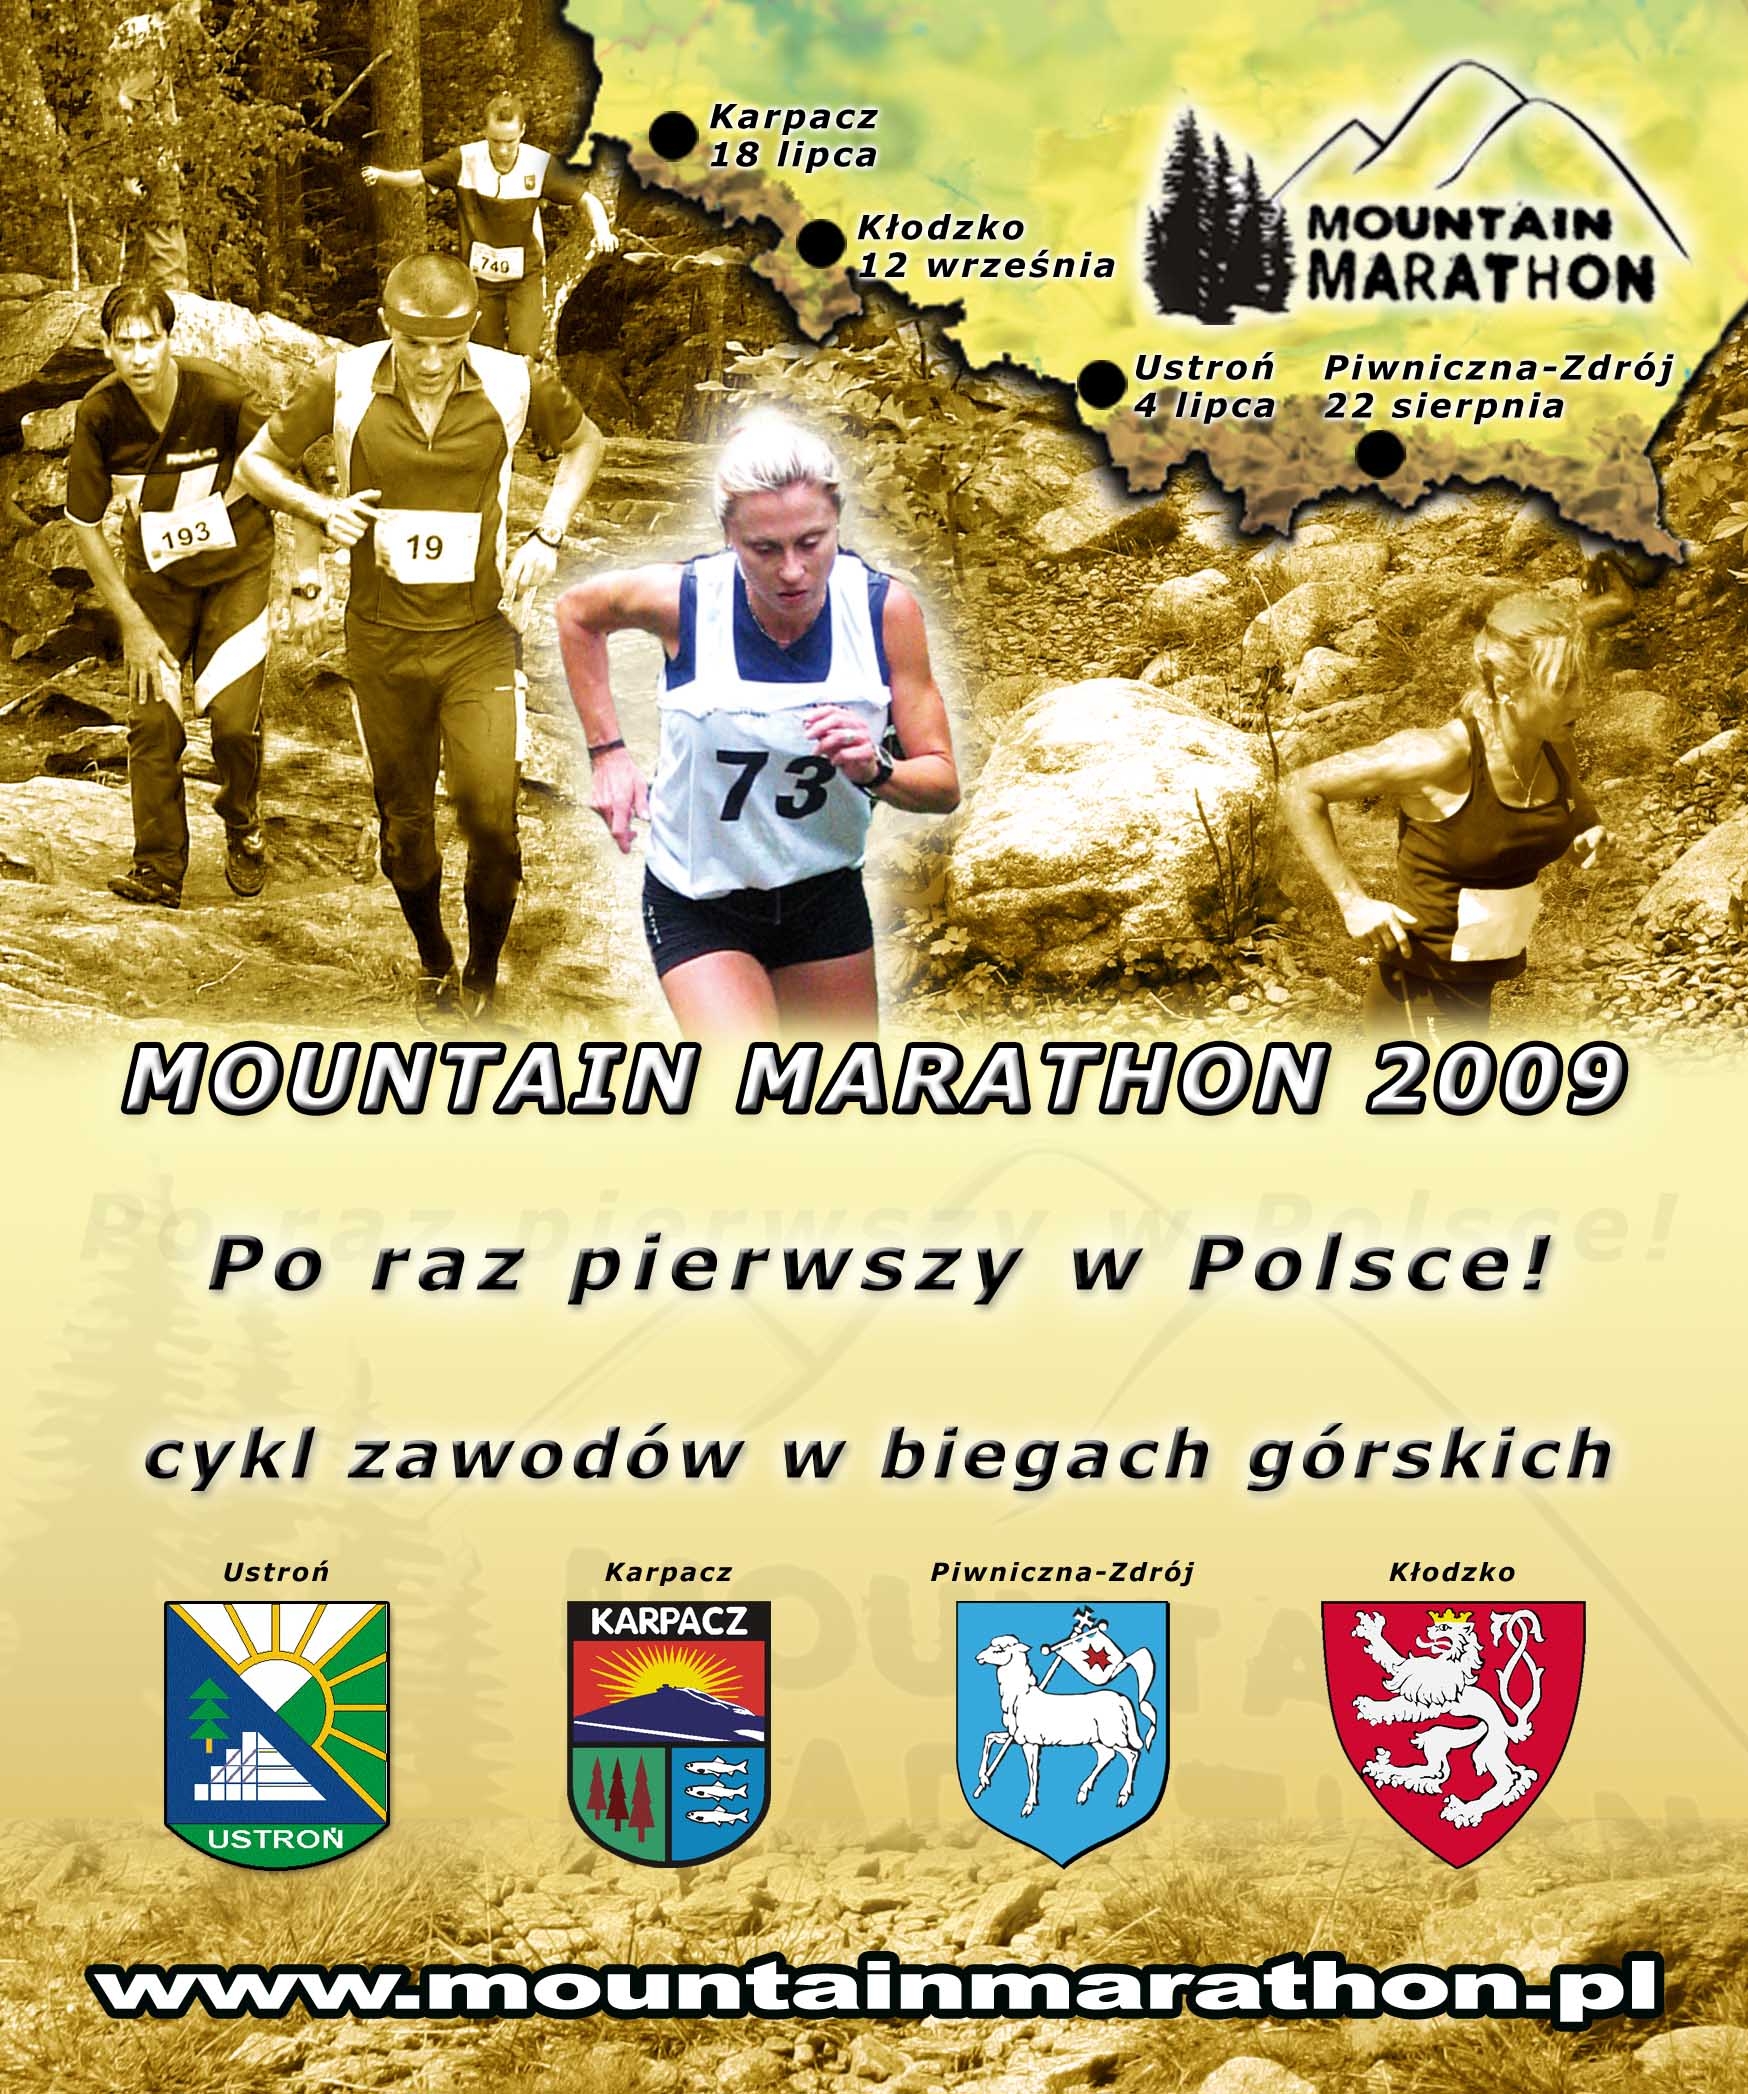 Mountain Marathon 2009 - 